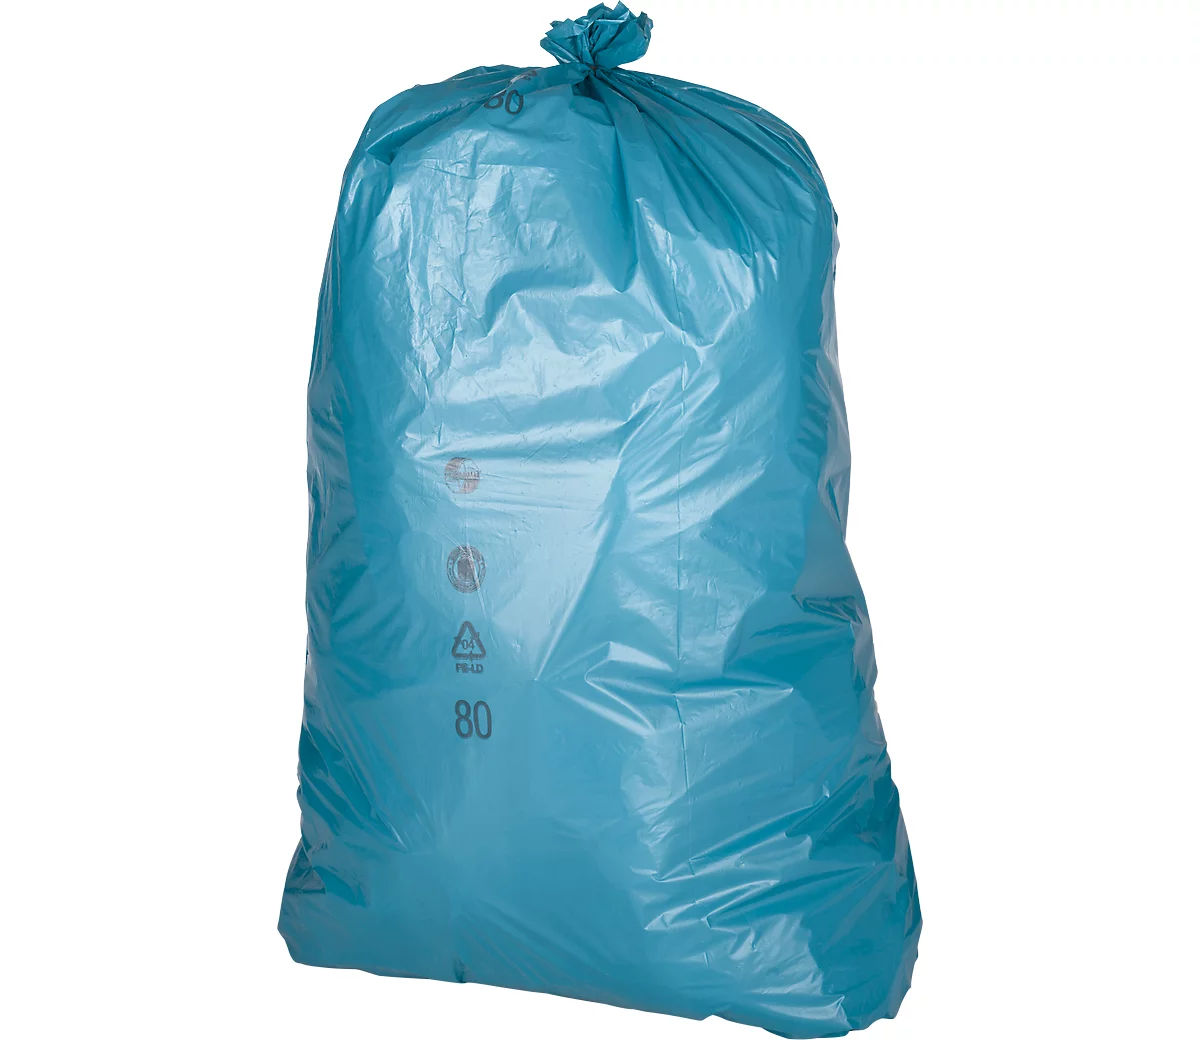 Sacs poubelle Premium, LDPE, épaisseur 37 my, 120 litres, diff. coloris à  prix avantageux